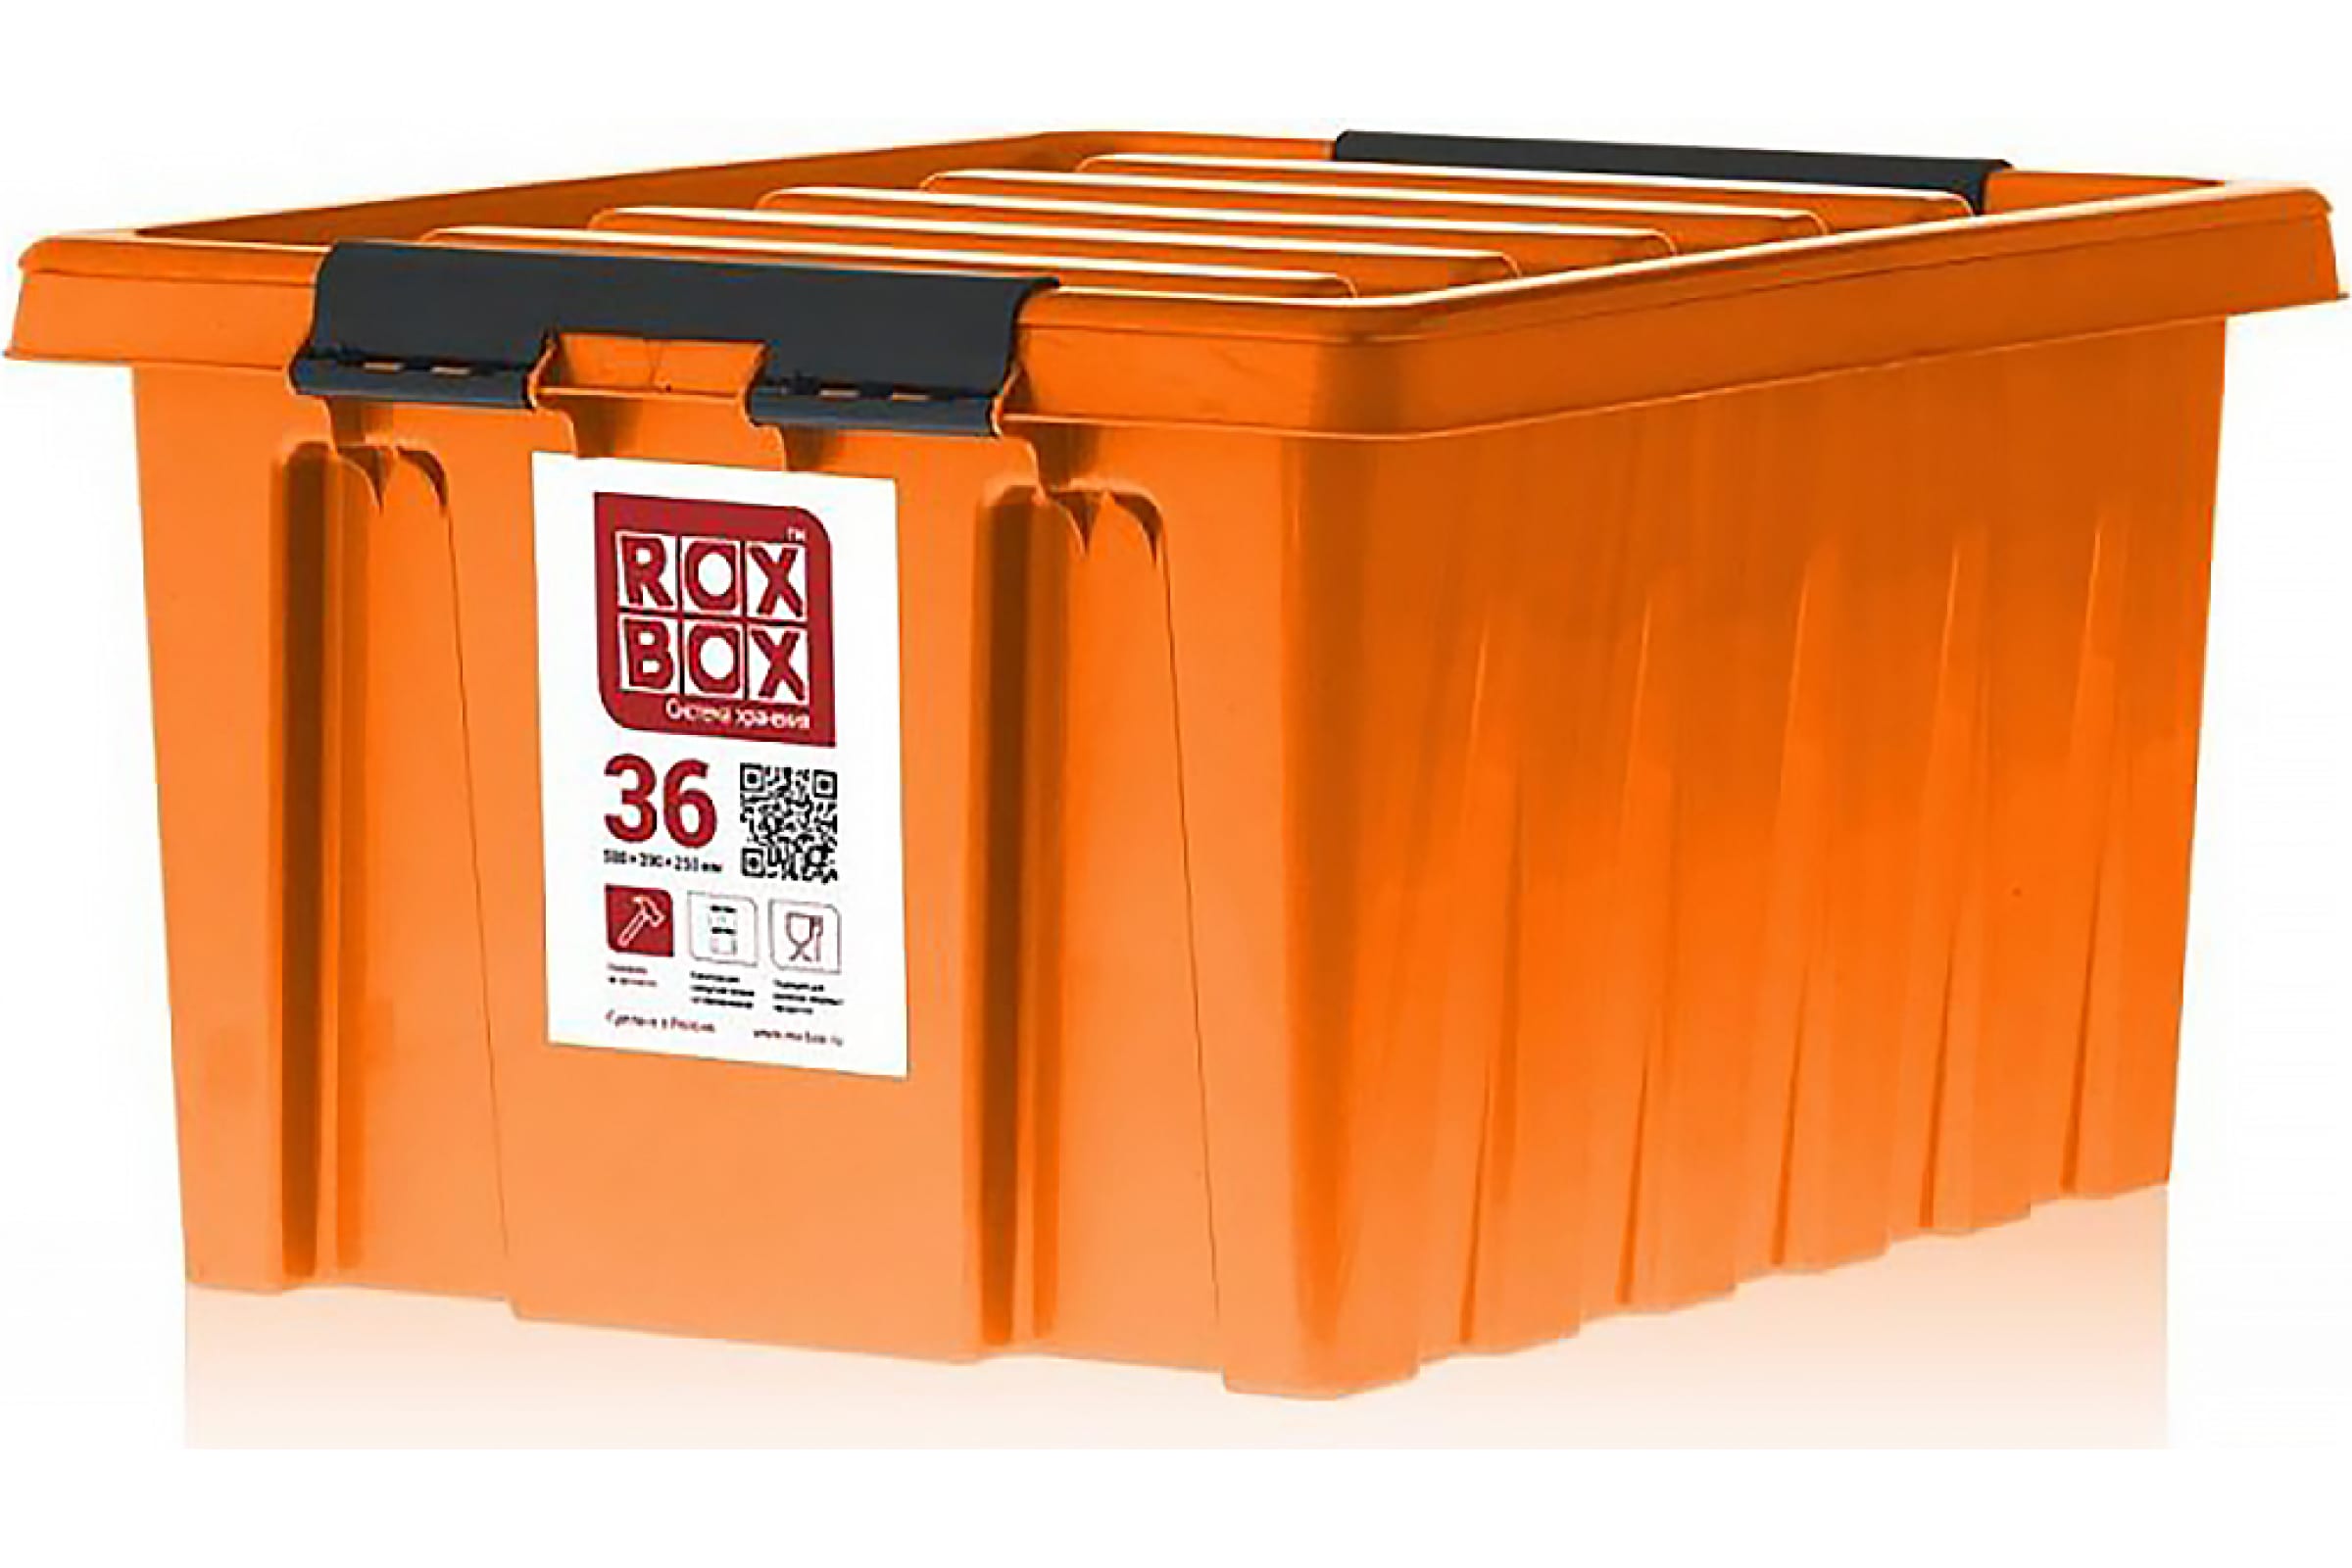 контейнер для еды locknlock для микроволновой печи 1 1 л оранжевый Rox Box Контейнер с крышкой, 36 л, оранжевый 036-00.12